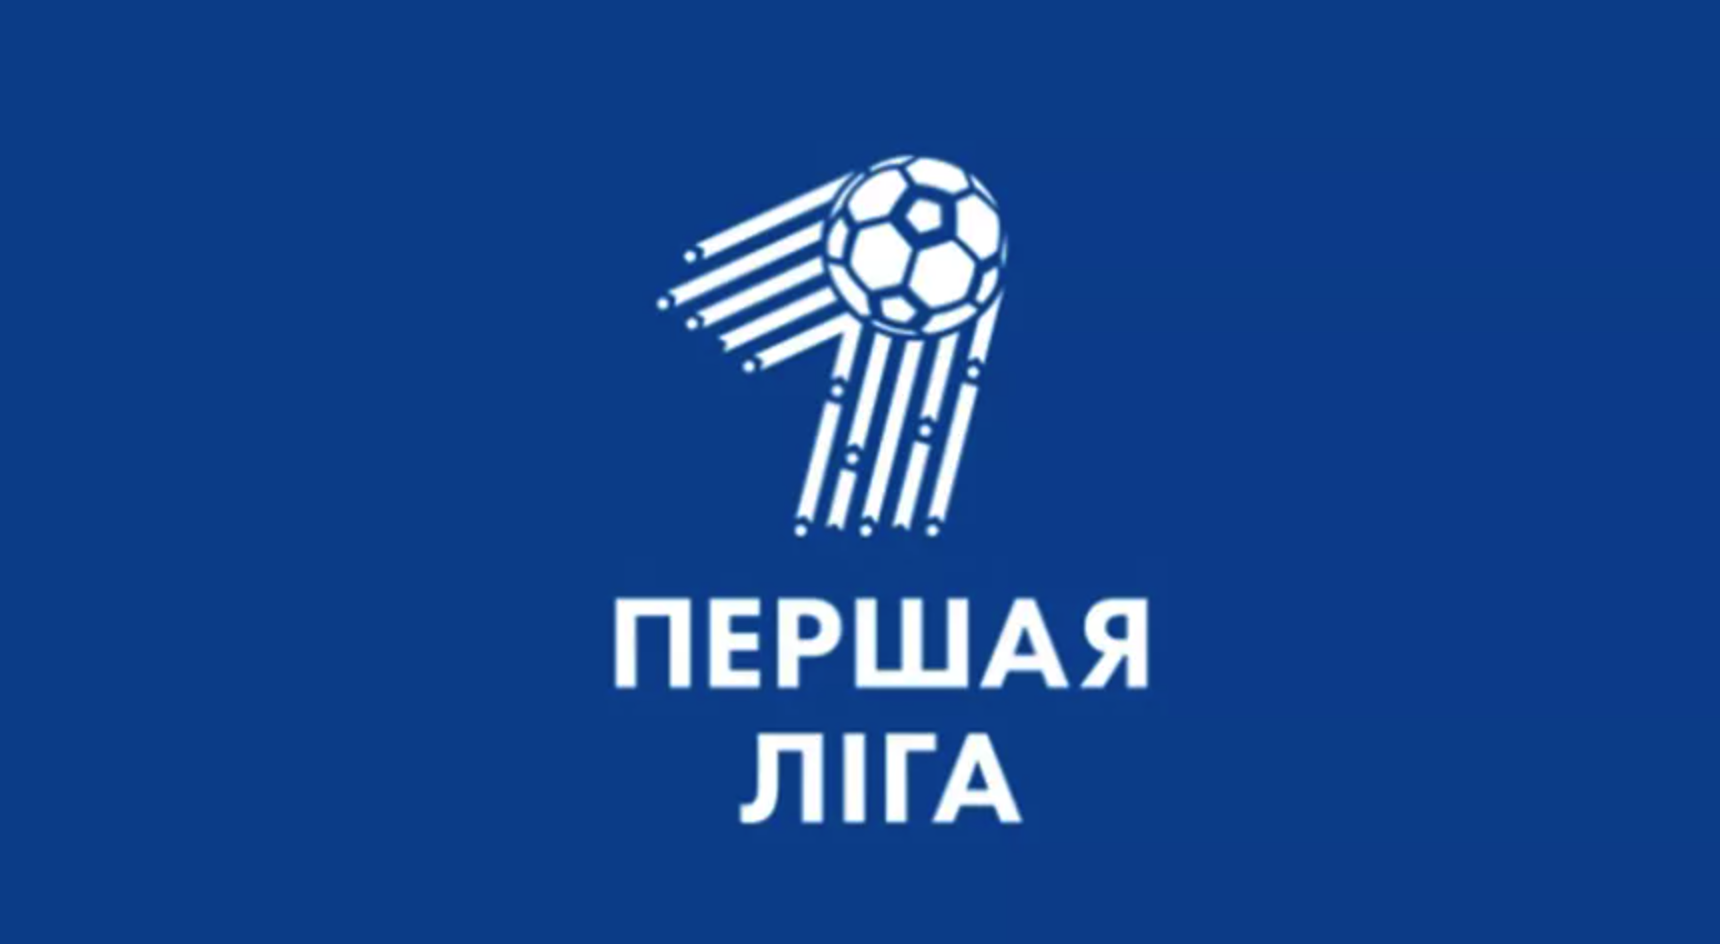 Первая лега. Первая лига логотип. Первая лига Беларуси логотип. Логотипы футбольных лиг. Белорусская лига футбол эмблема.